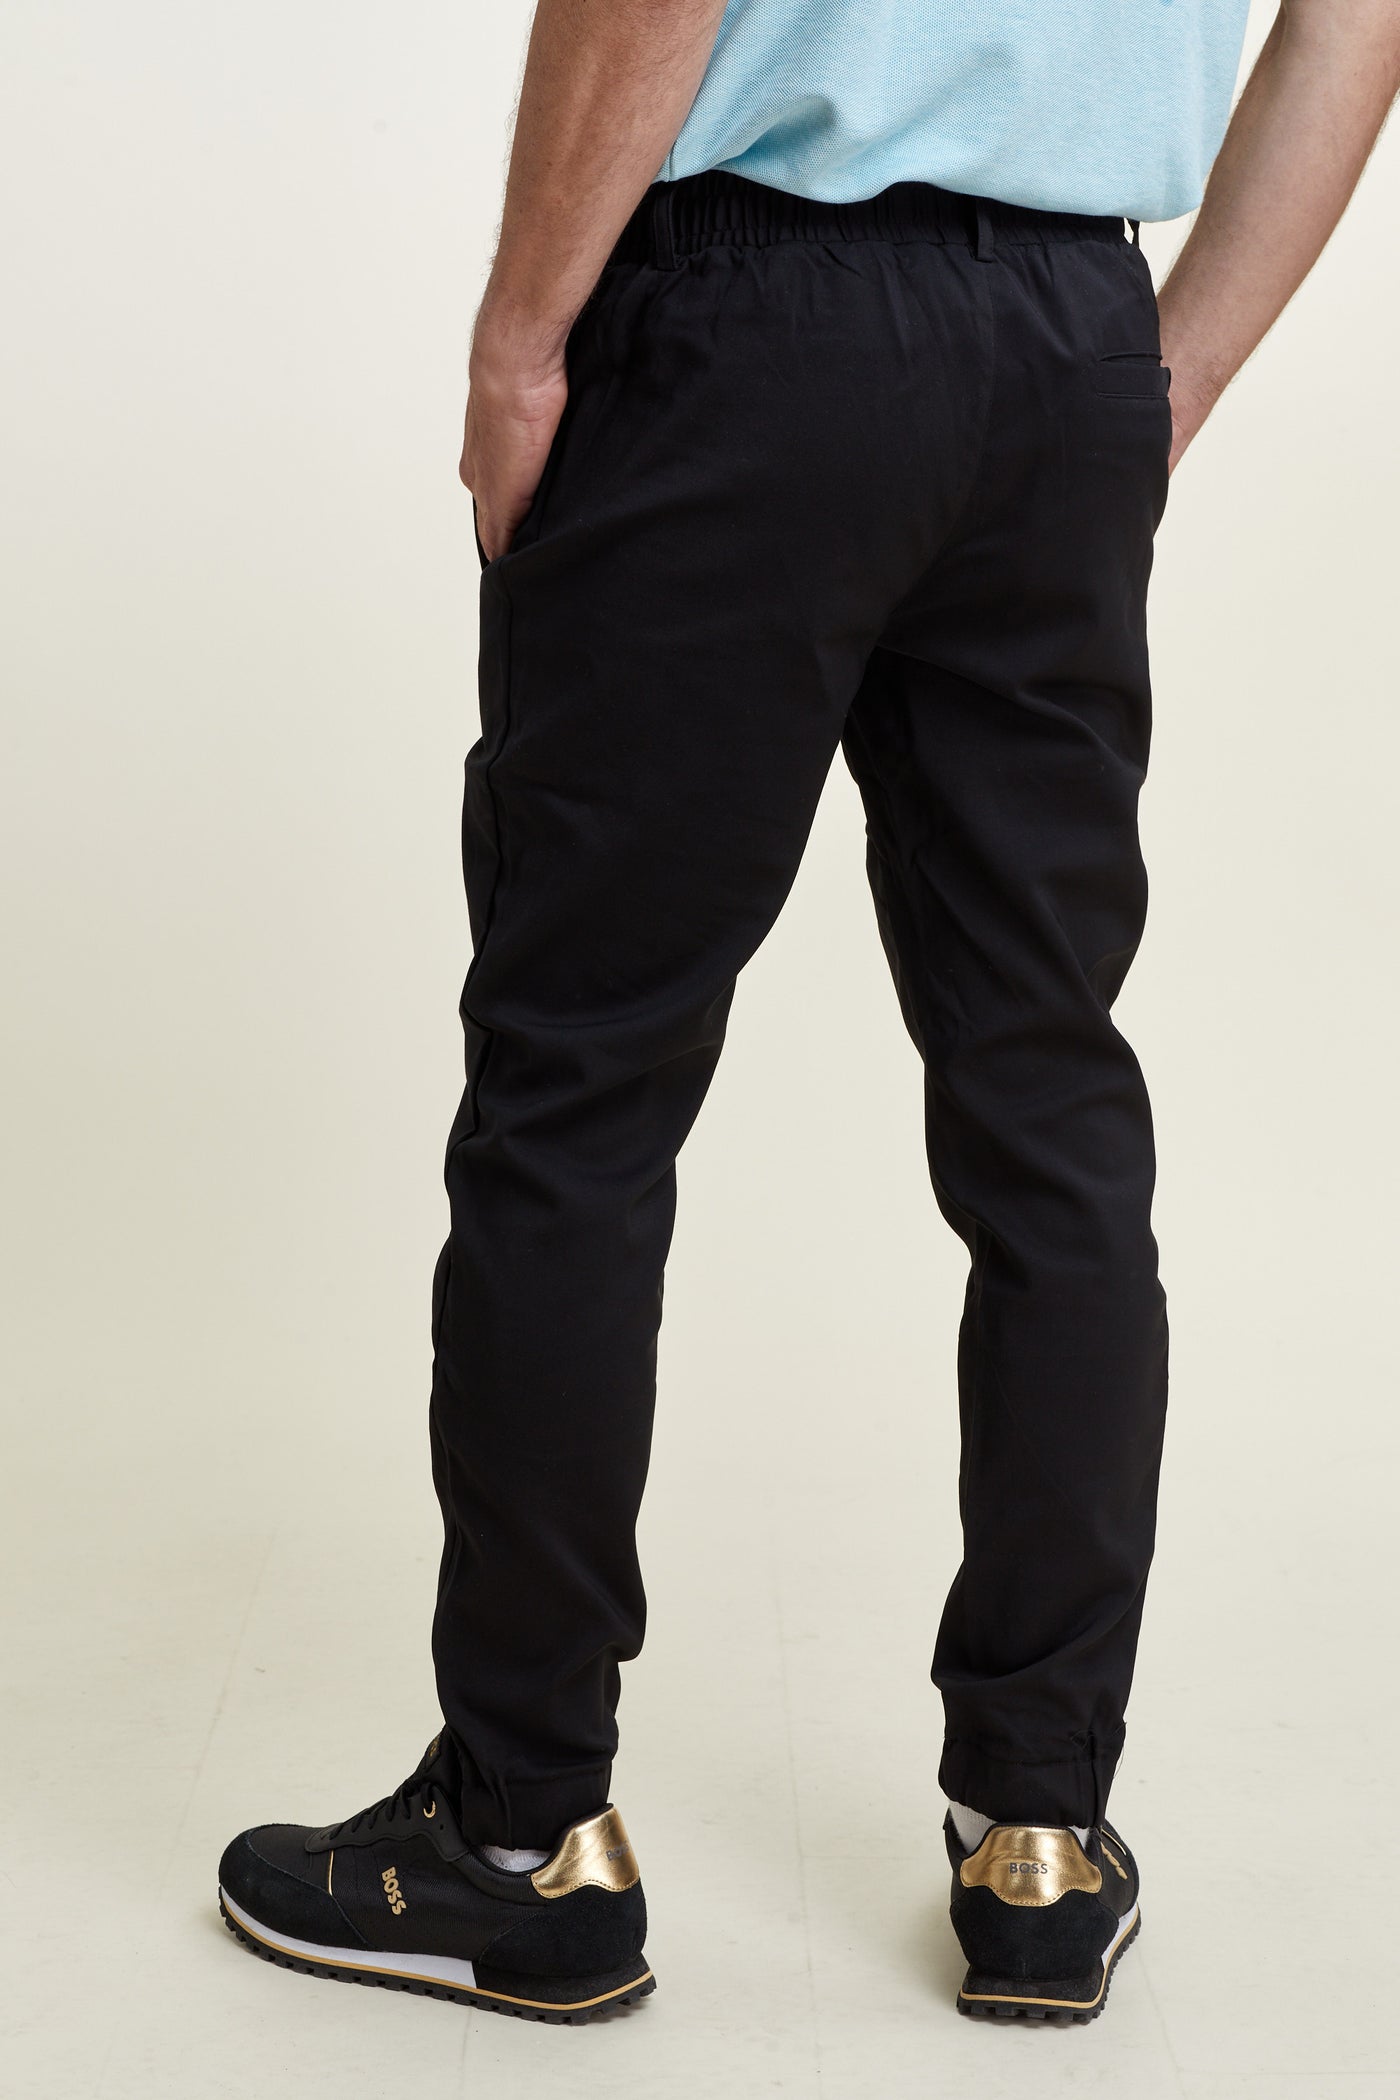 מכנס ארוך בצבע שחור